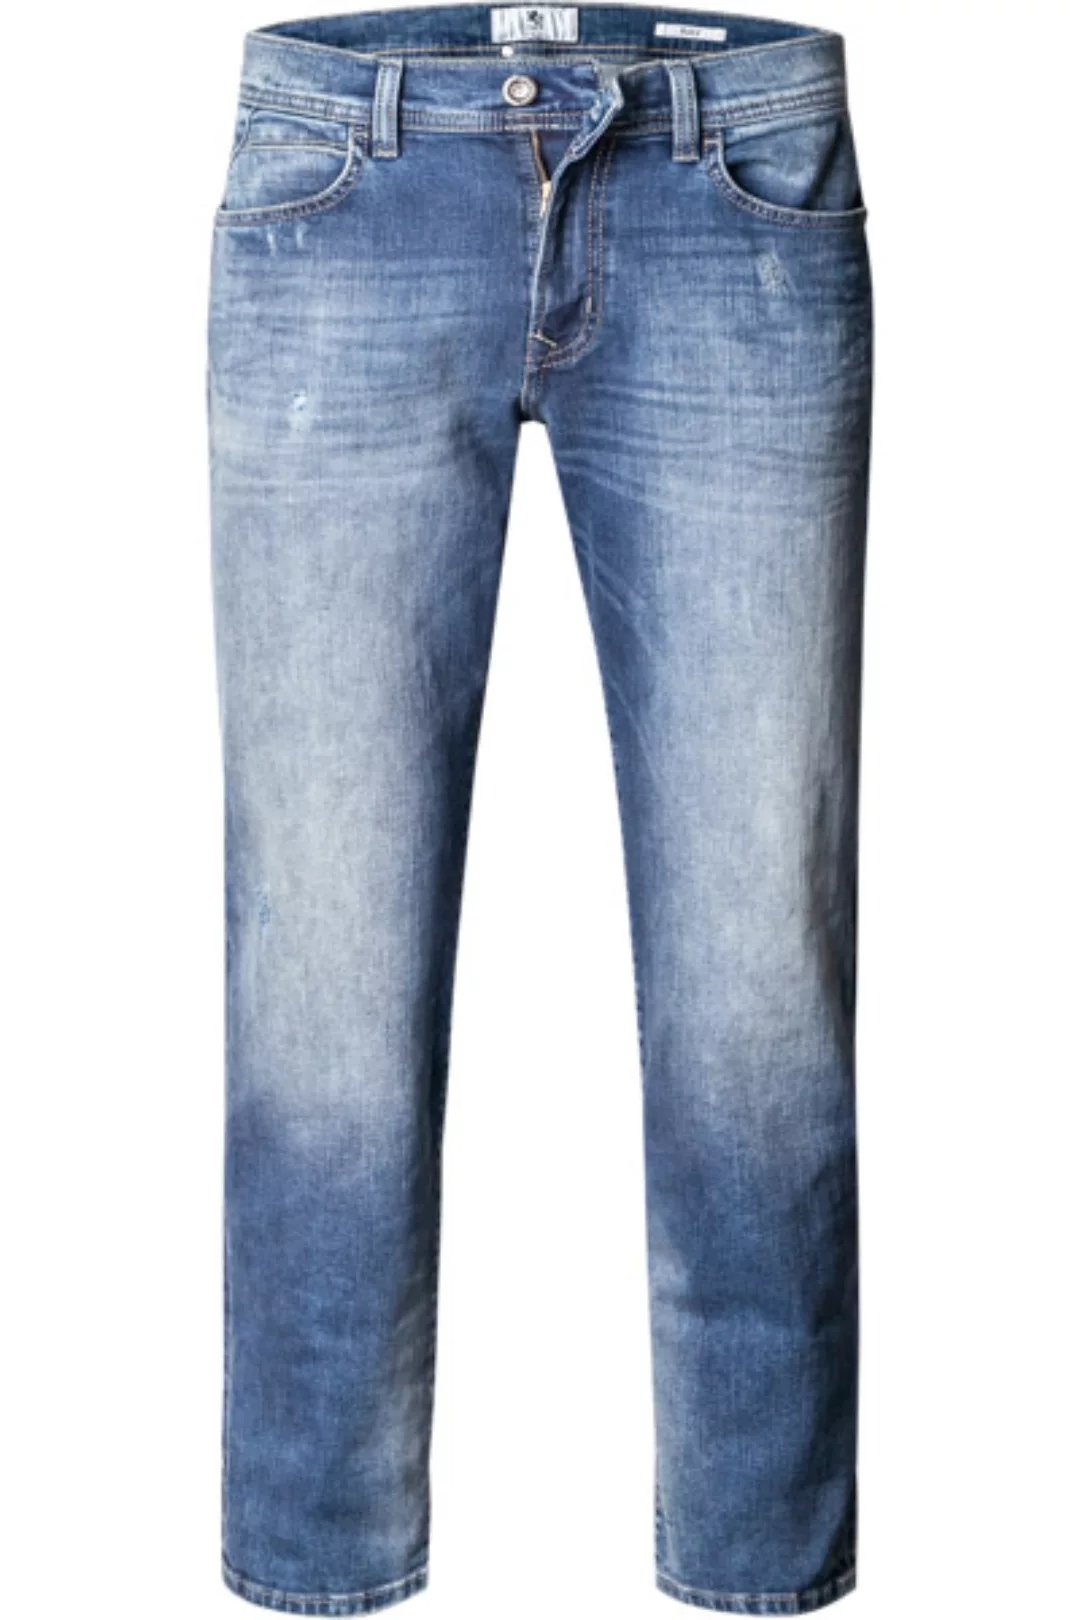 Otto Kern Jeans K0 67170.6844/6837 günstig online kaufen